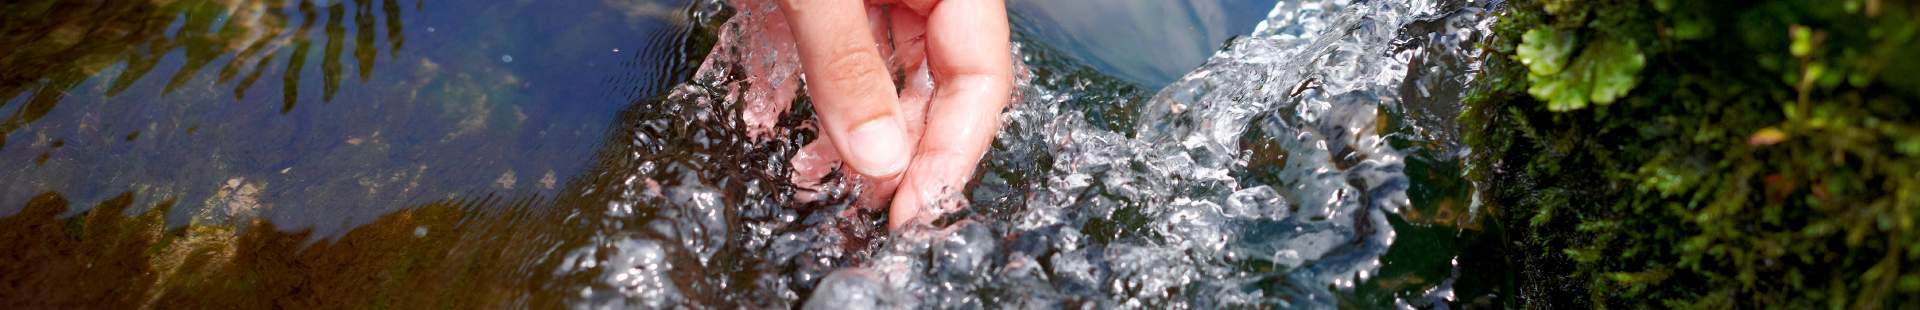 VRK Transparenz – Eine Hand greift in einen Bach mit klarem Wasser.